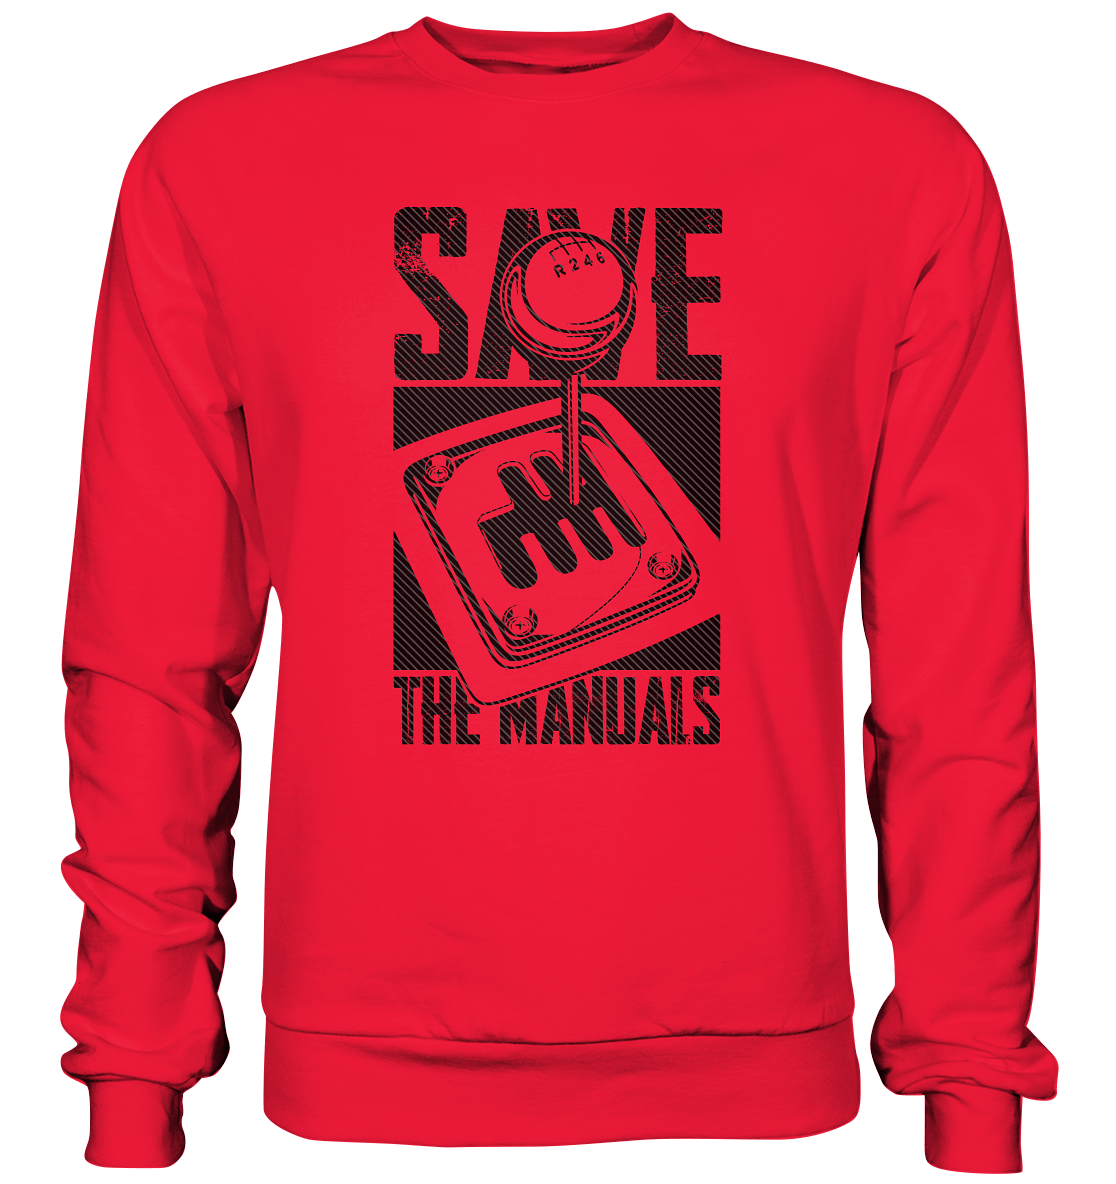 Save the Manuals dunkel - Premium Sweatshirt - MotoMerch.de